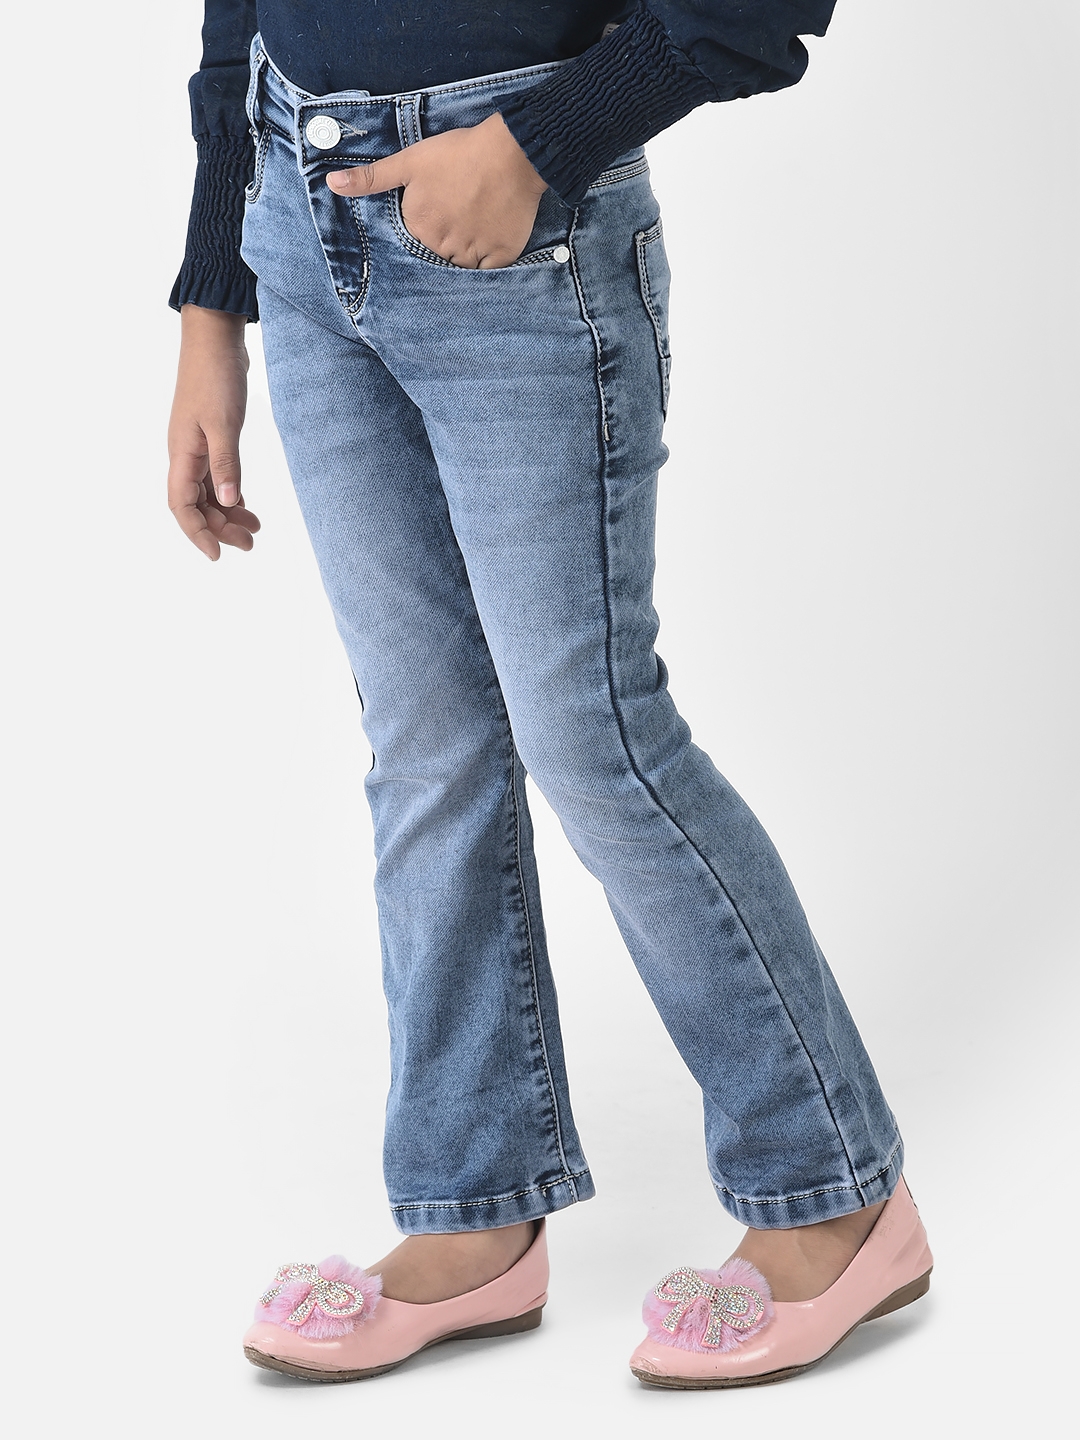 Crimsoune Club Girls Blue Jeans in Boot Cut Fit 